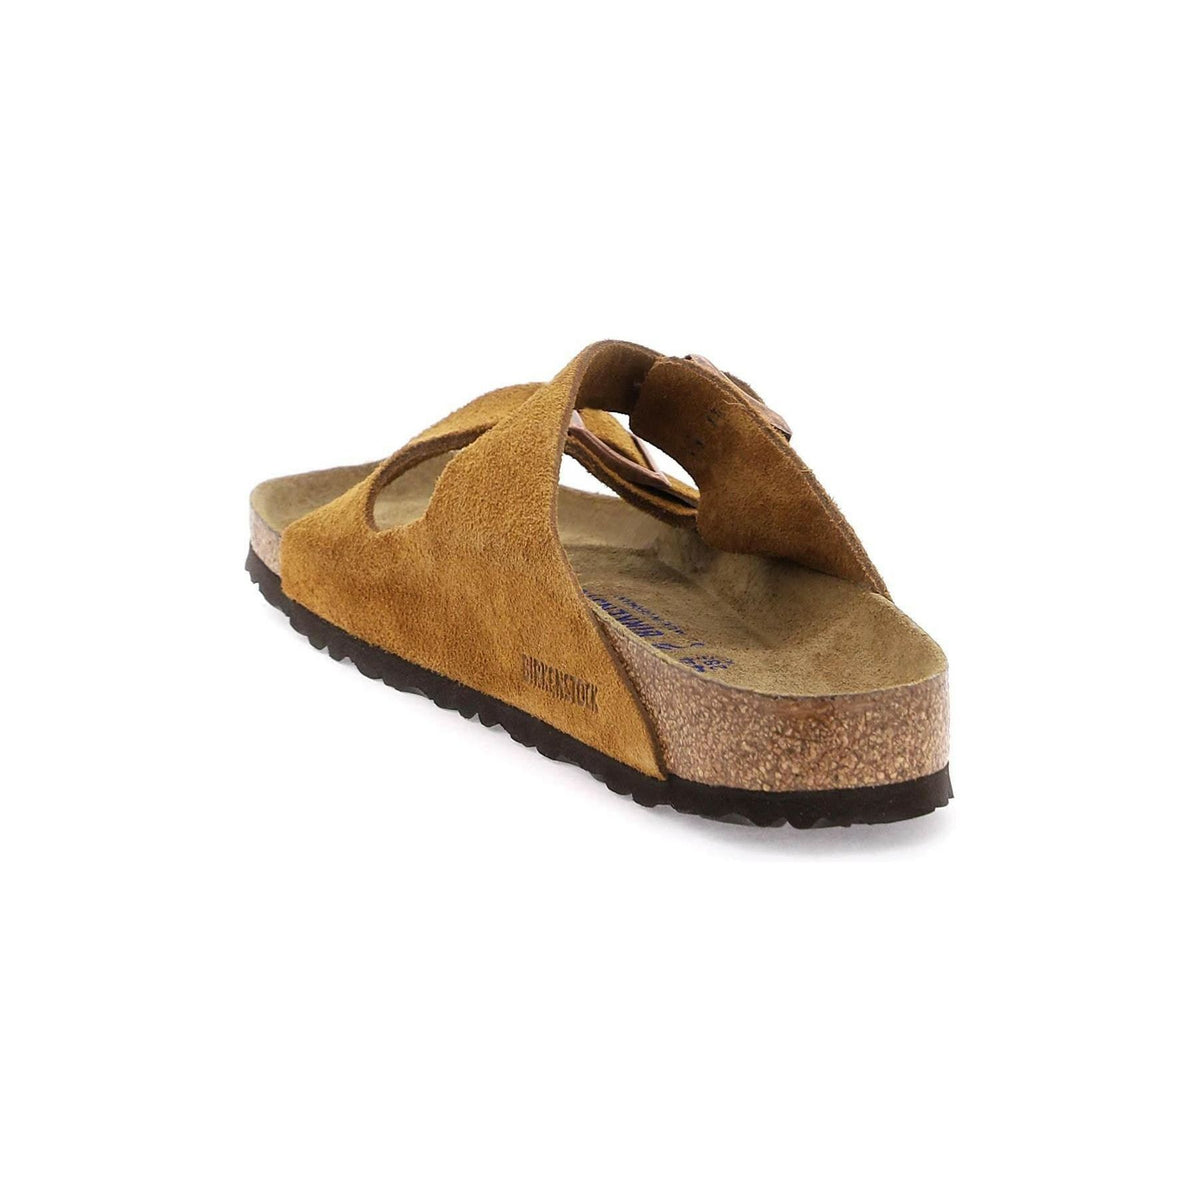 BIRKENSTOCK - Mink Brown Arizona Soft Footbed Suede Leather Regular Fit - JOHN JULIA